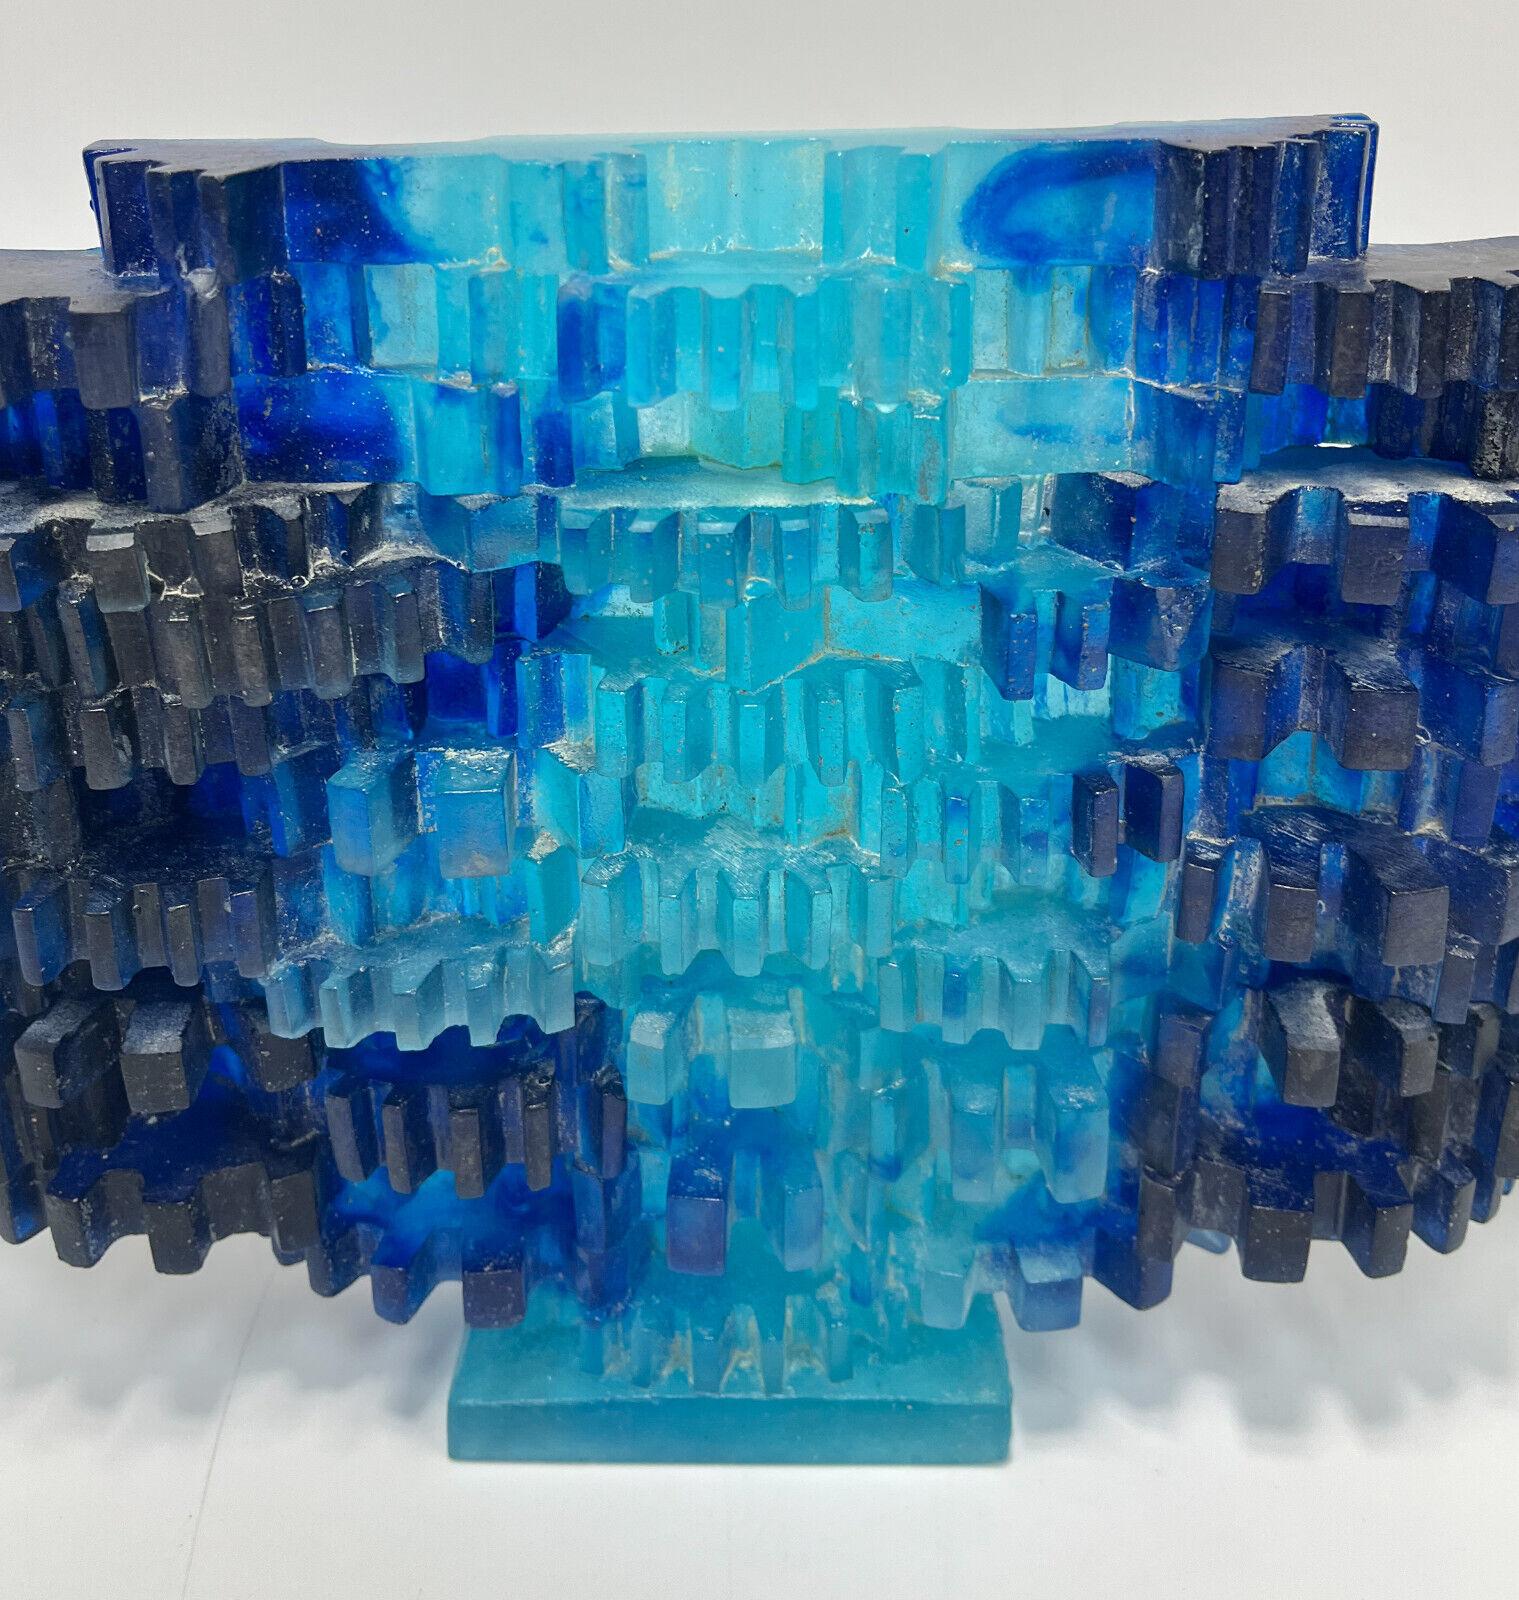 Abstrakte Daum Pate De Vere-Skulptur von Mard de Rosny, limitierte Auflage von 200 Stück

Durchgehend mehrfarbige blaue geriffelte Würfel. Auf der einen Seite des Sockels mit der Marke 